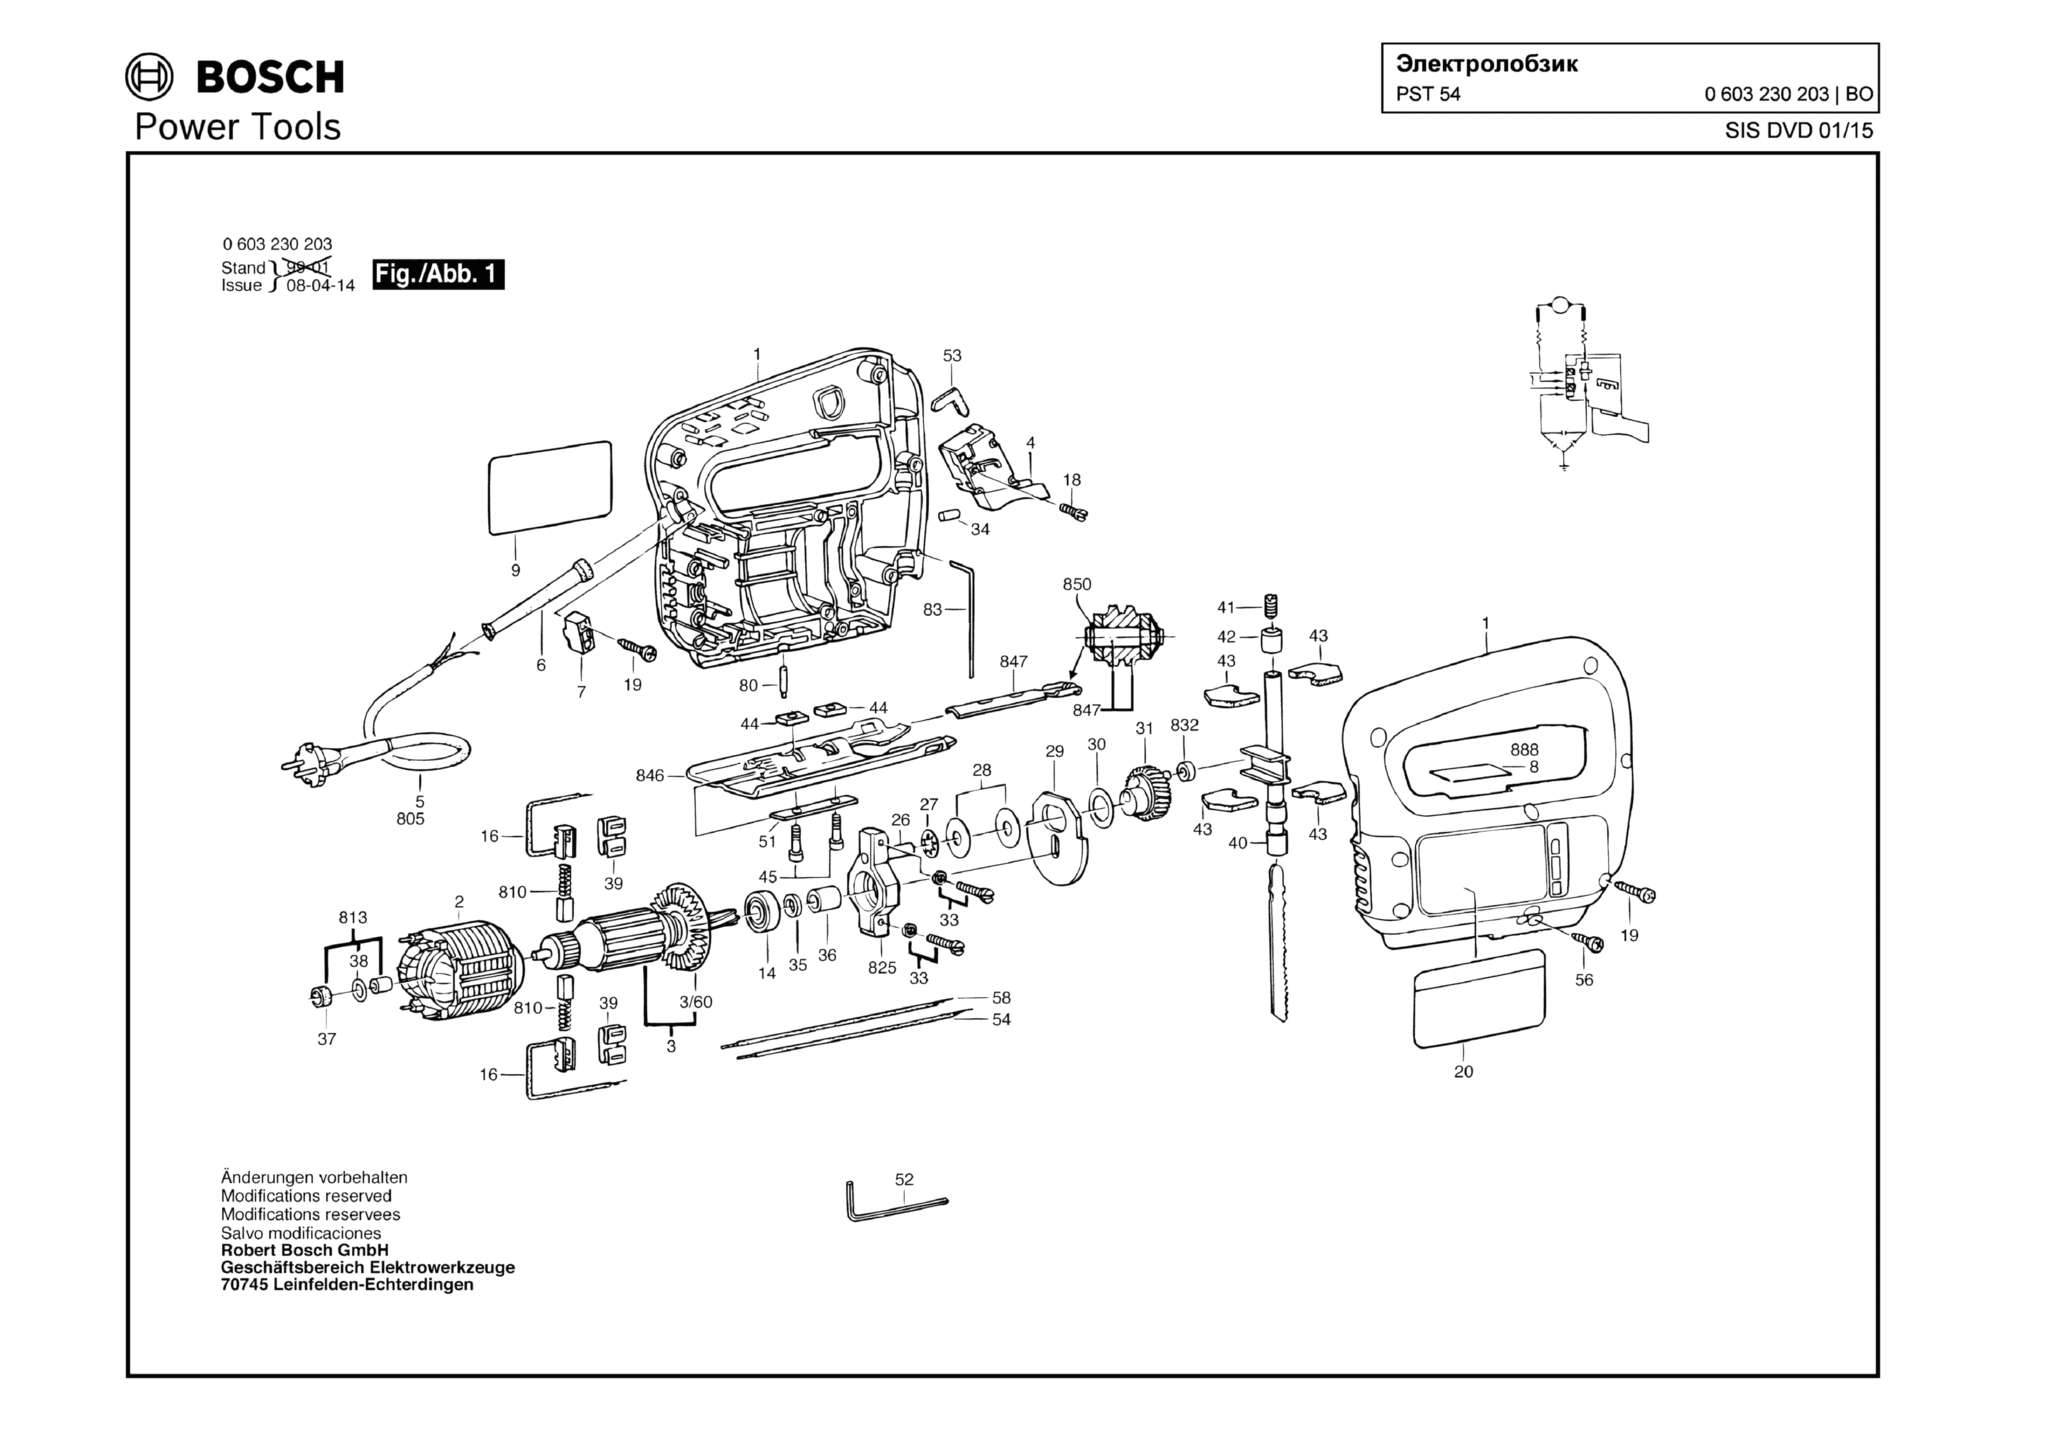 Запчасти, схема и деталировка Bosch PST 54 (ТИП 0603230203)